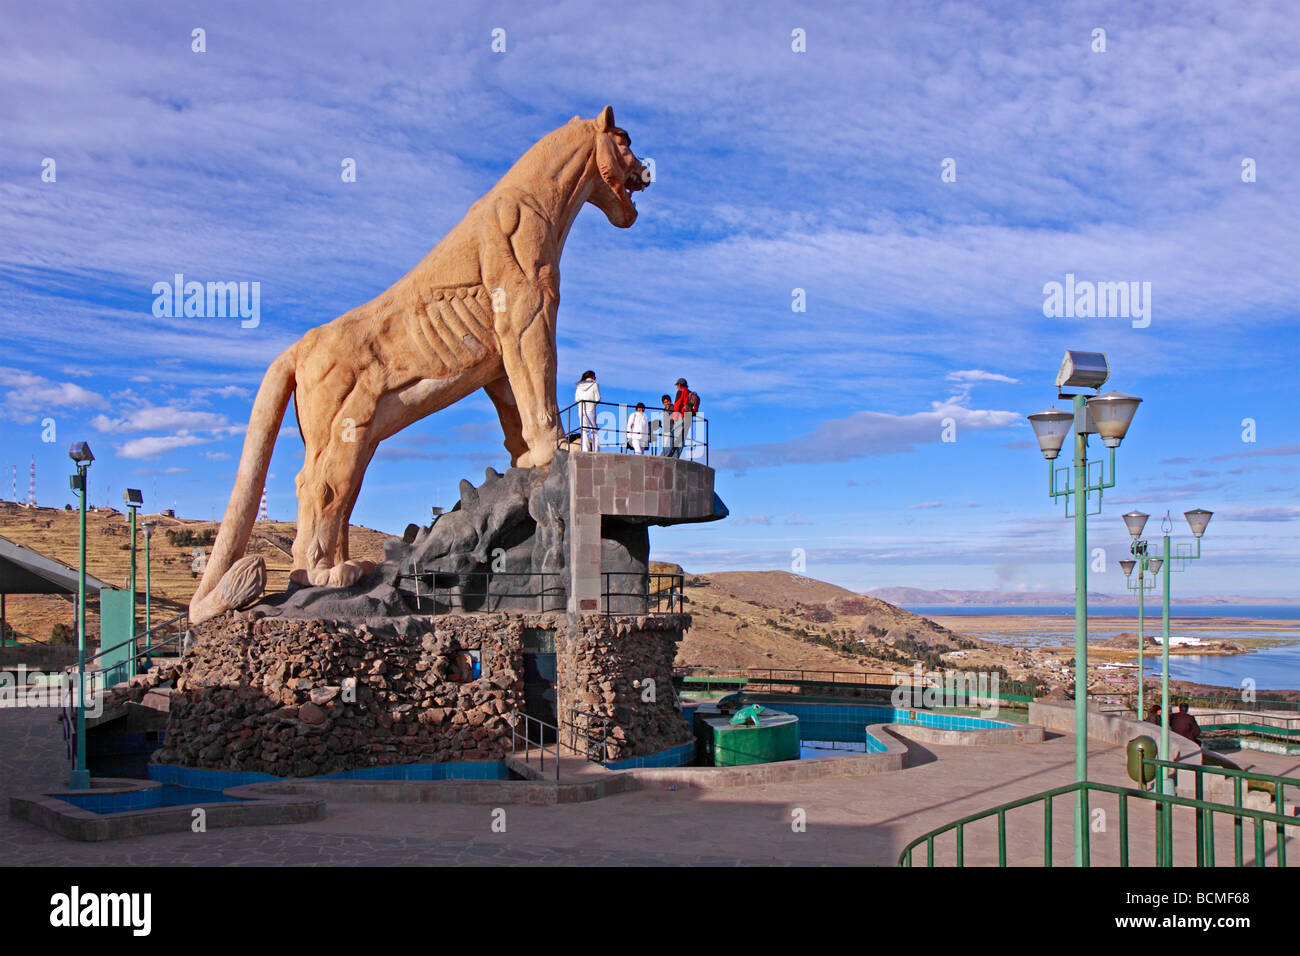 Puma statue at a viewpoint in Puno, Peru Stock Photo - Alamy